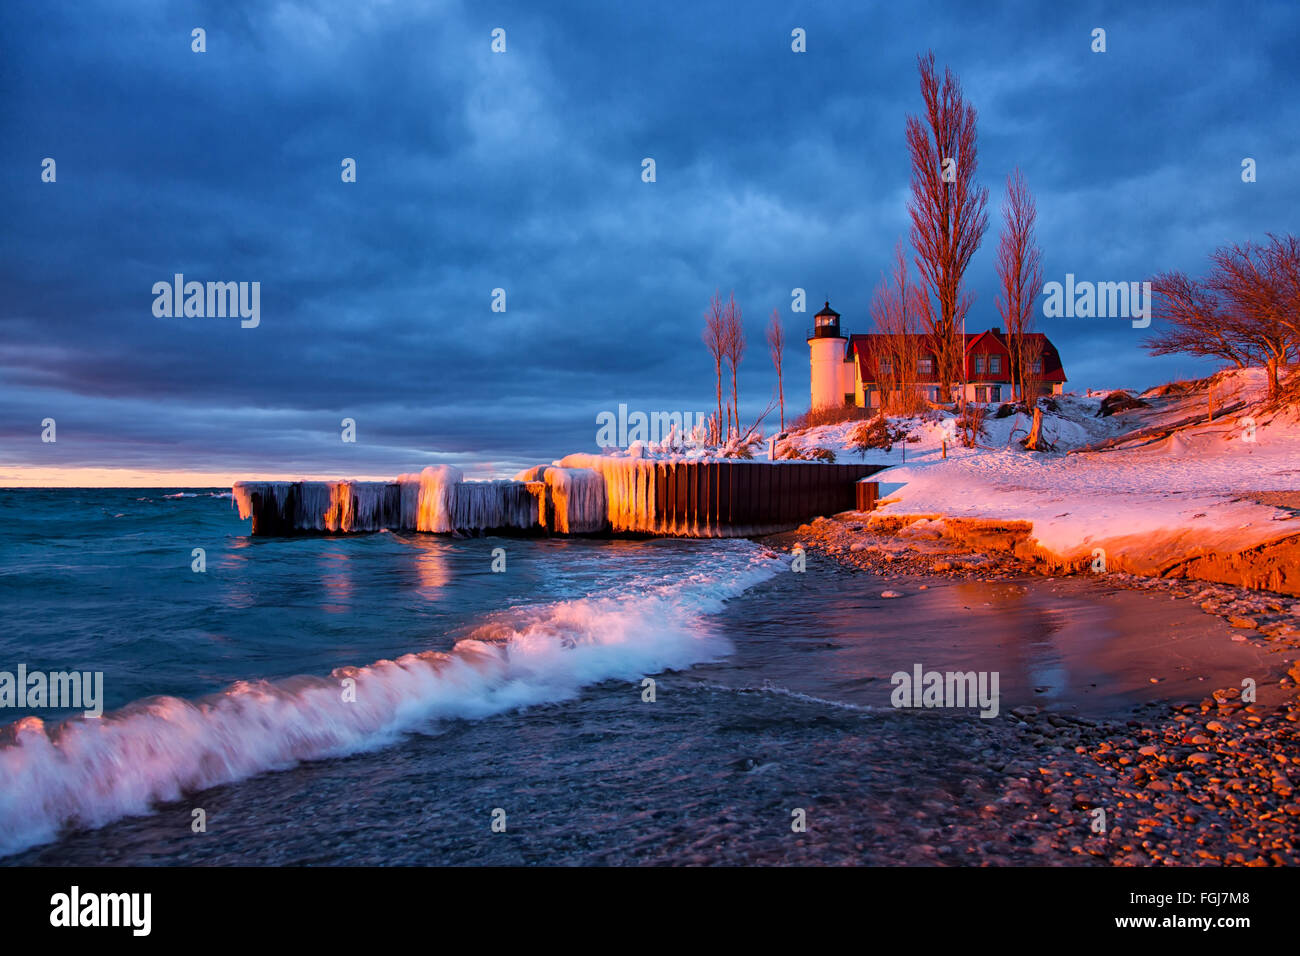 Punto Betsie faro in inverno sulle rive del lago Michigan. Tramonto brilla sulla scena invernale nel Michigan del nord Foto Stock